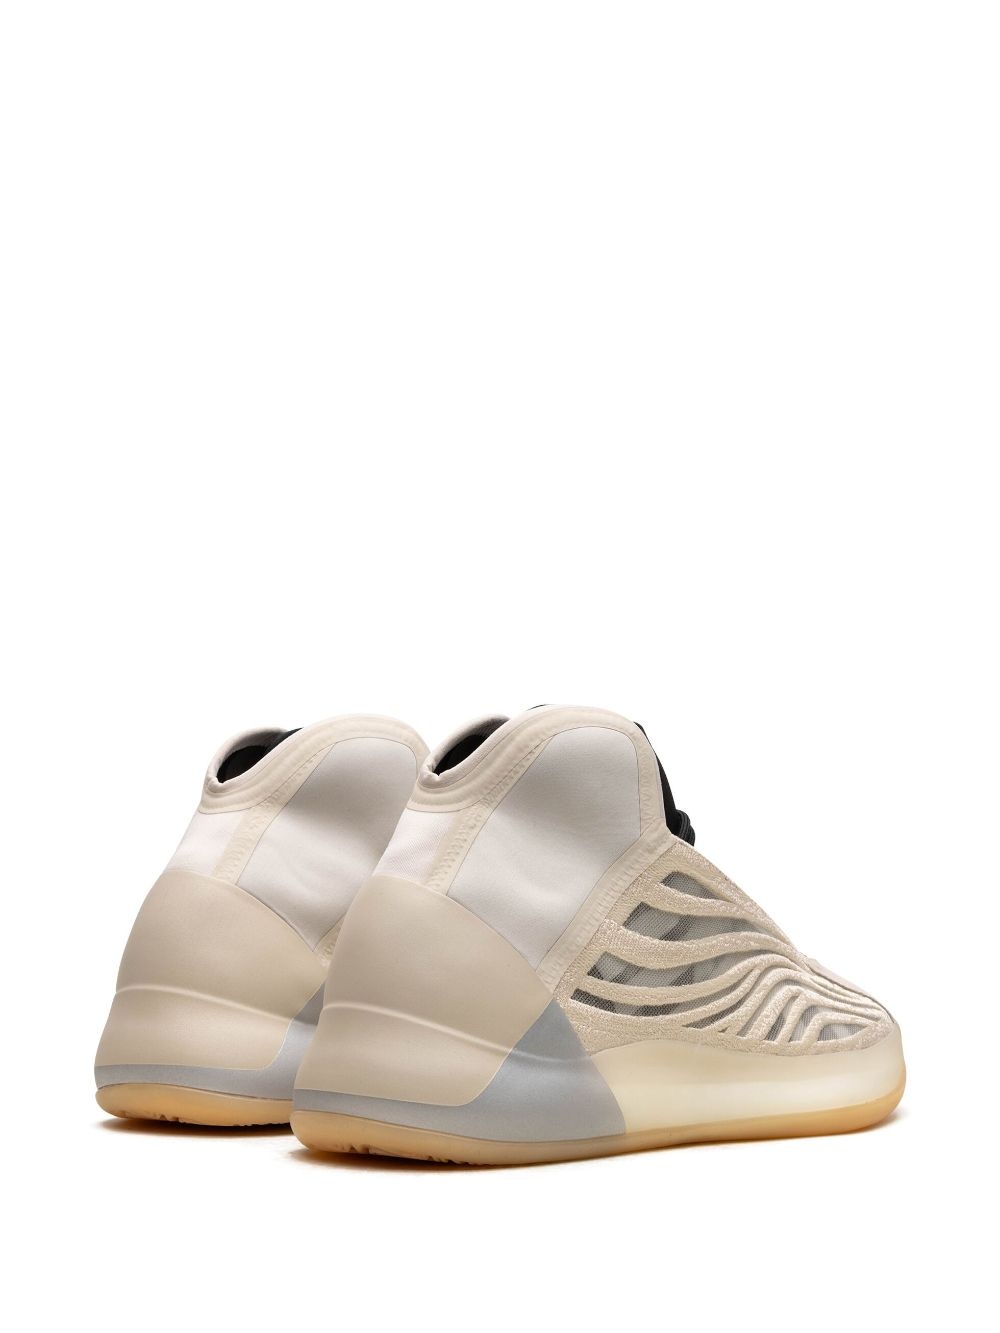 YEEZY Quantum "Cream" sneakers - 4